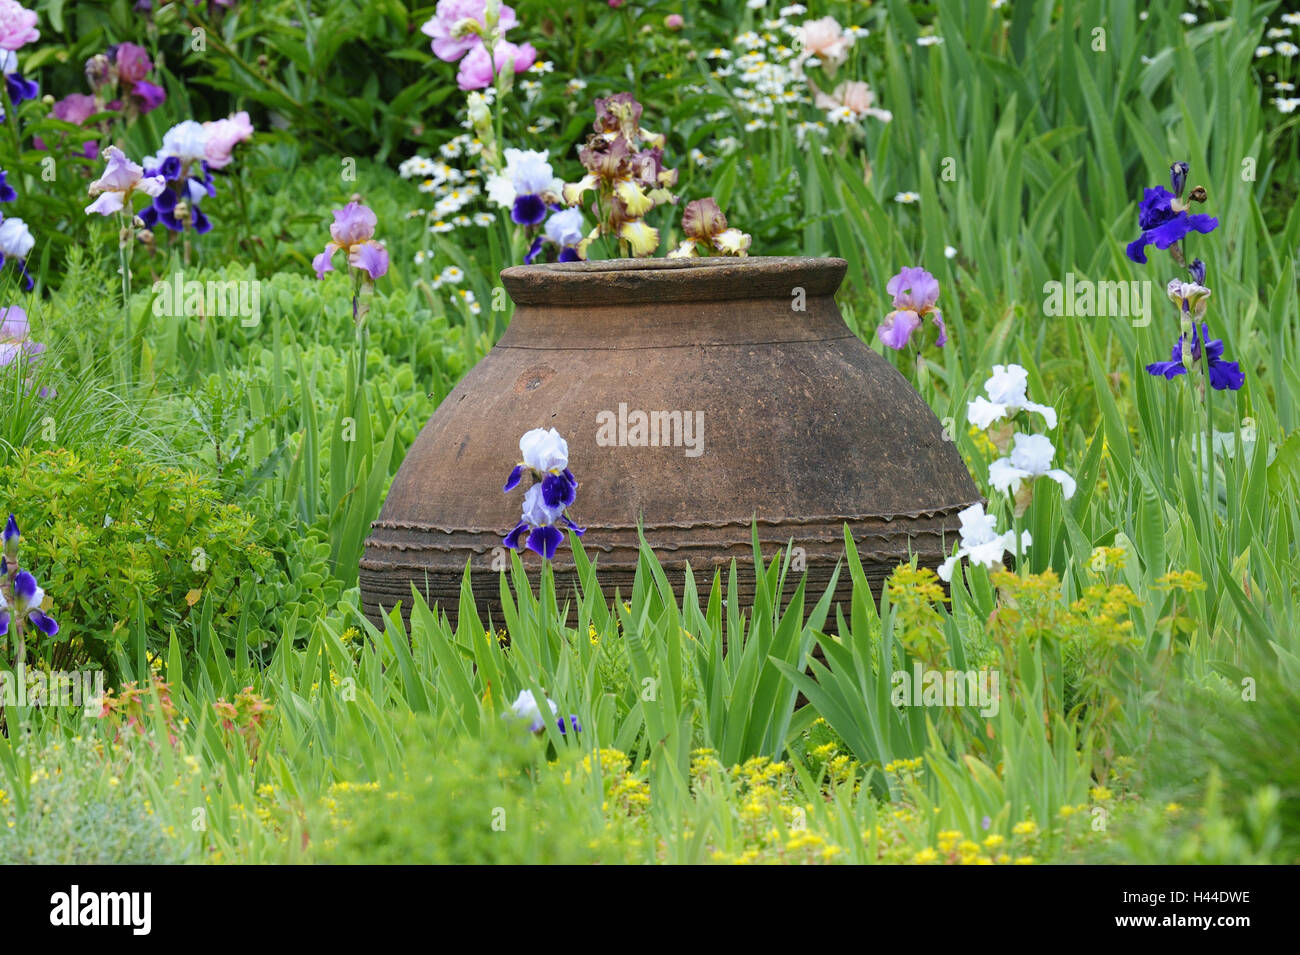 Garden, clay vase, Stock Photo